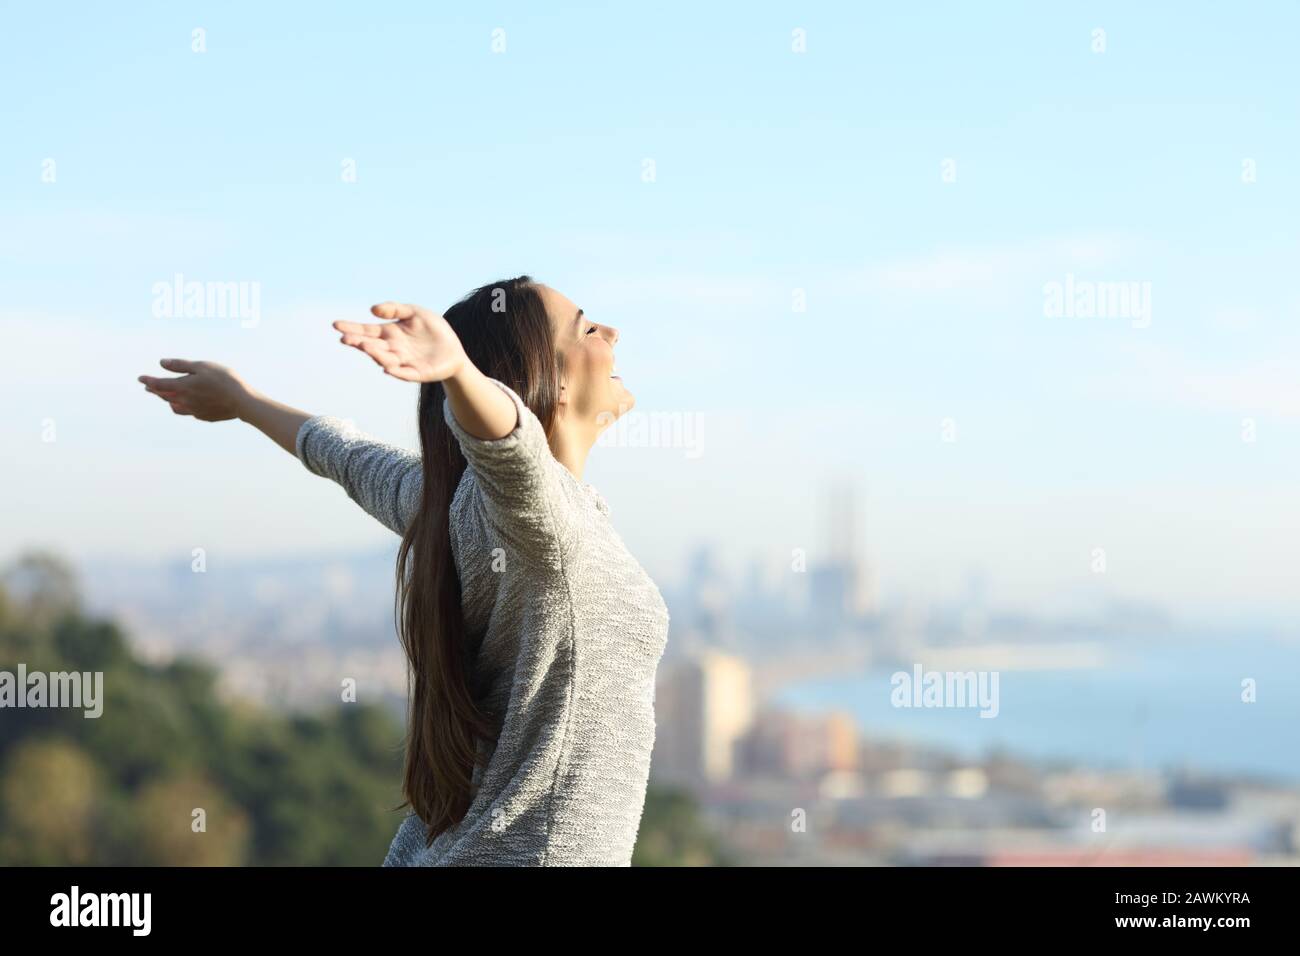 Vue latérale portrait d'une heureuse femme qui étire les bras respirer l'air frais à l'extérieur avec une ville côtière dans l'arrière-plan Banque D'Images